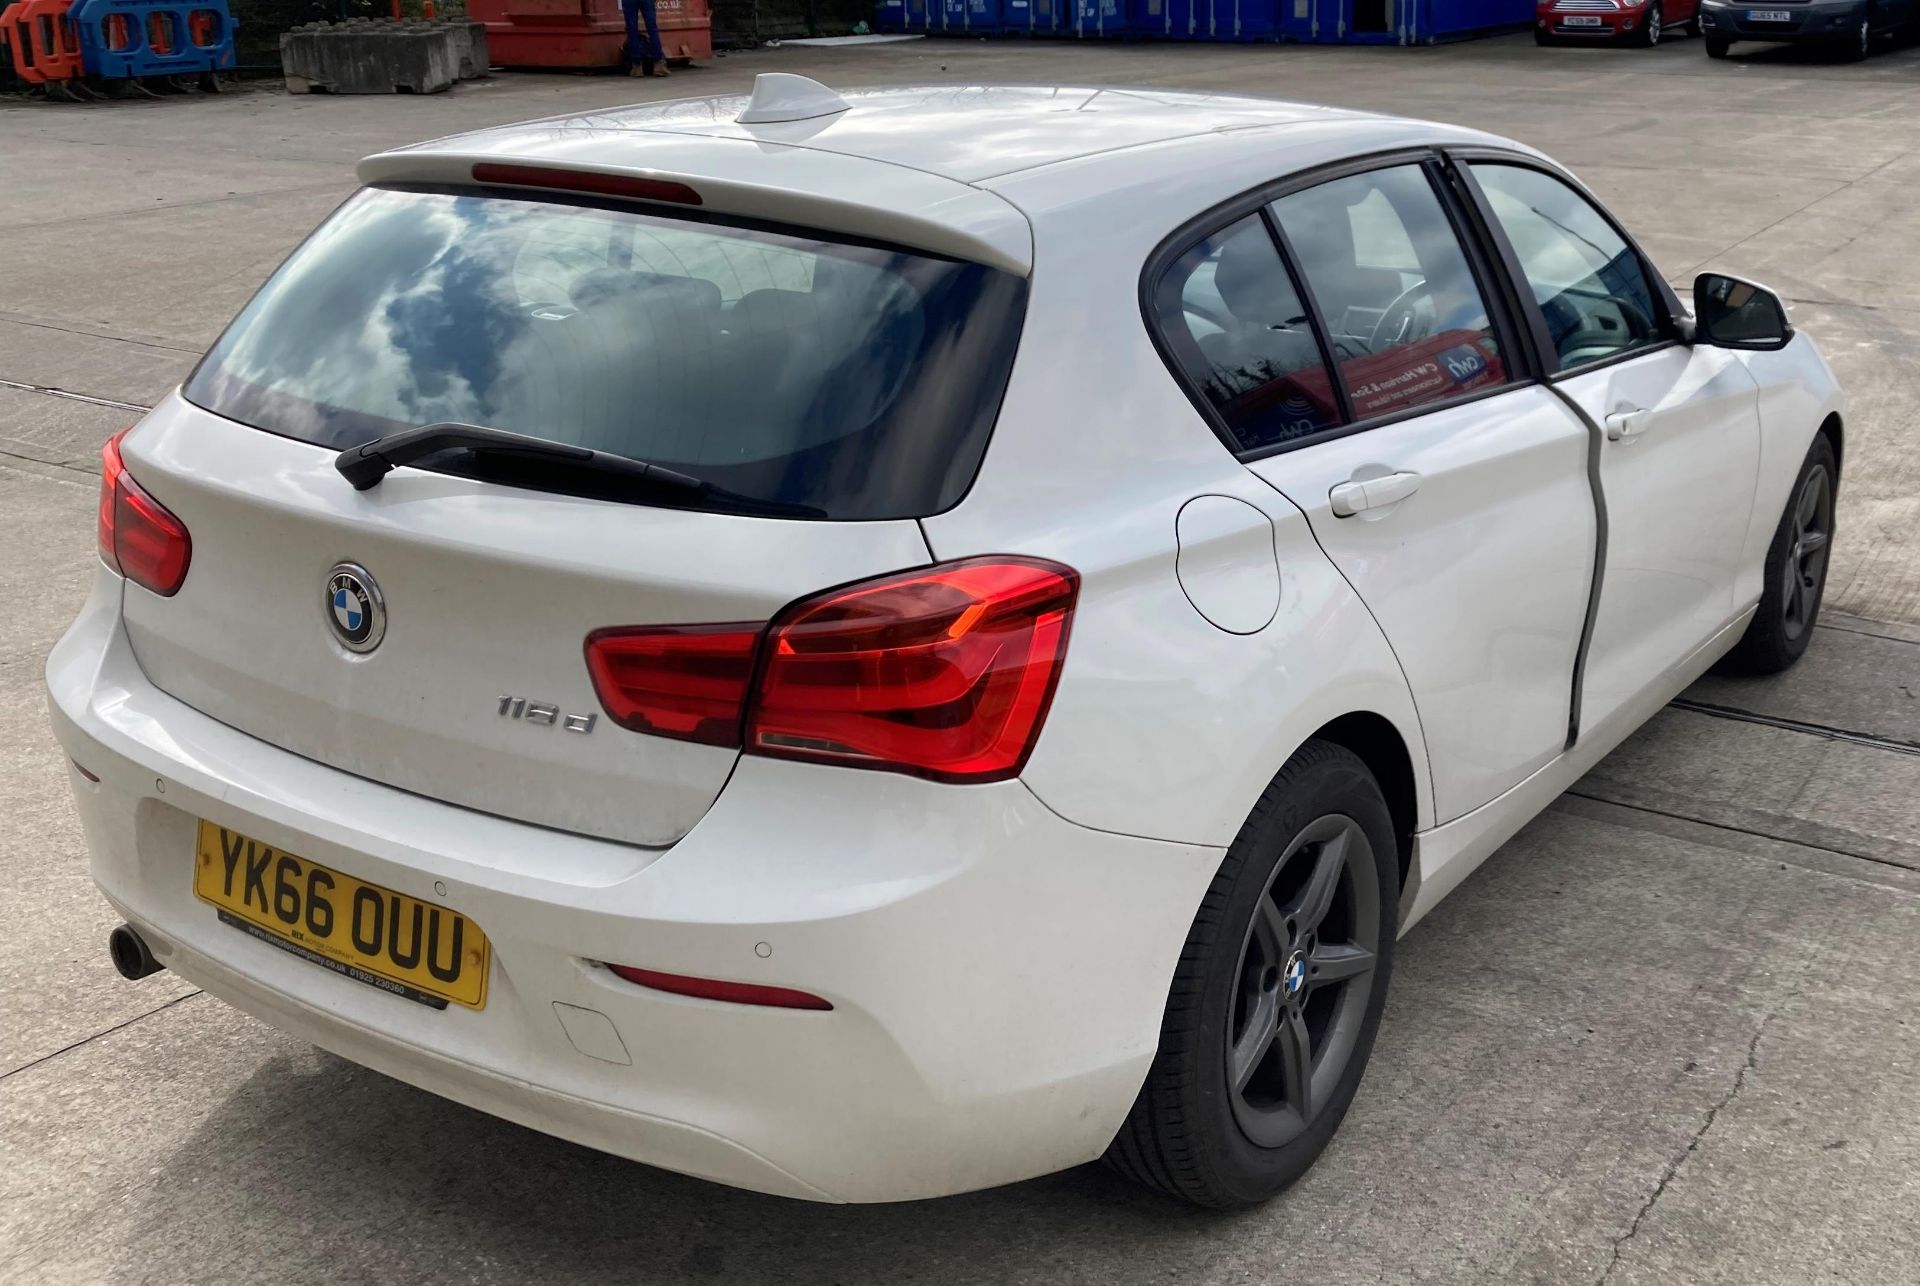 BMW 116d five door hatchback - diesel - white - dark grey cloth interior, with alloy wheels. - Image 5 of 11